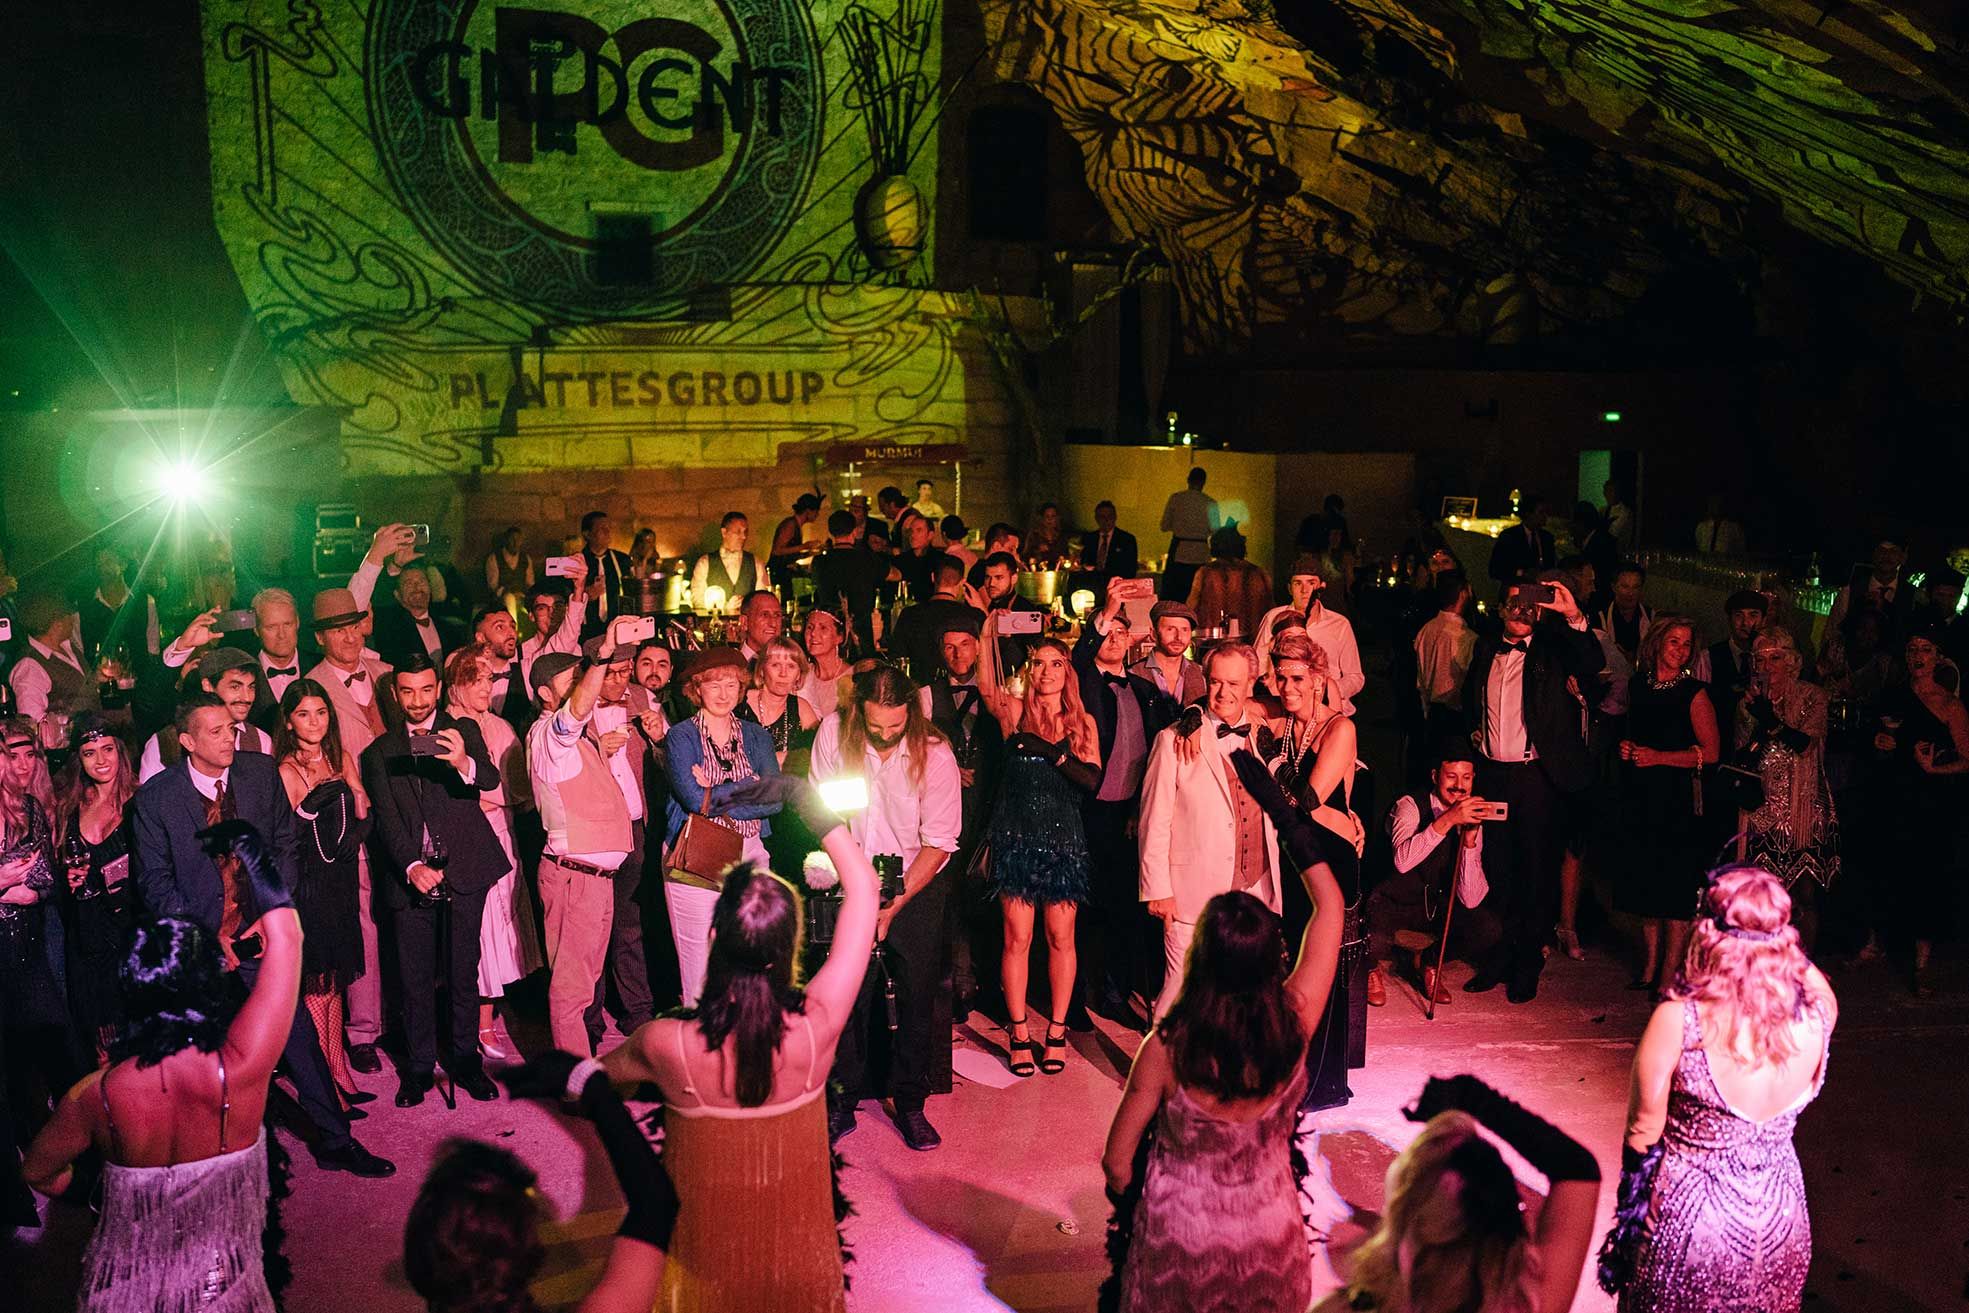 So feierte die PlattesGroup auf Mallorca ihr 22-jähriges Bestehen